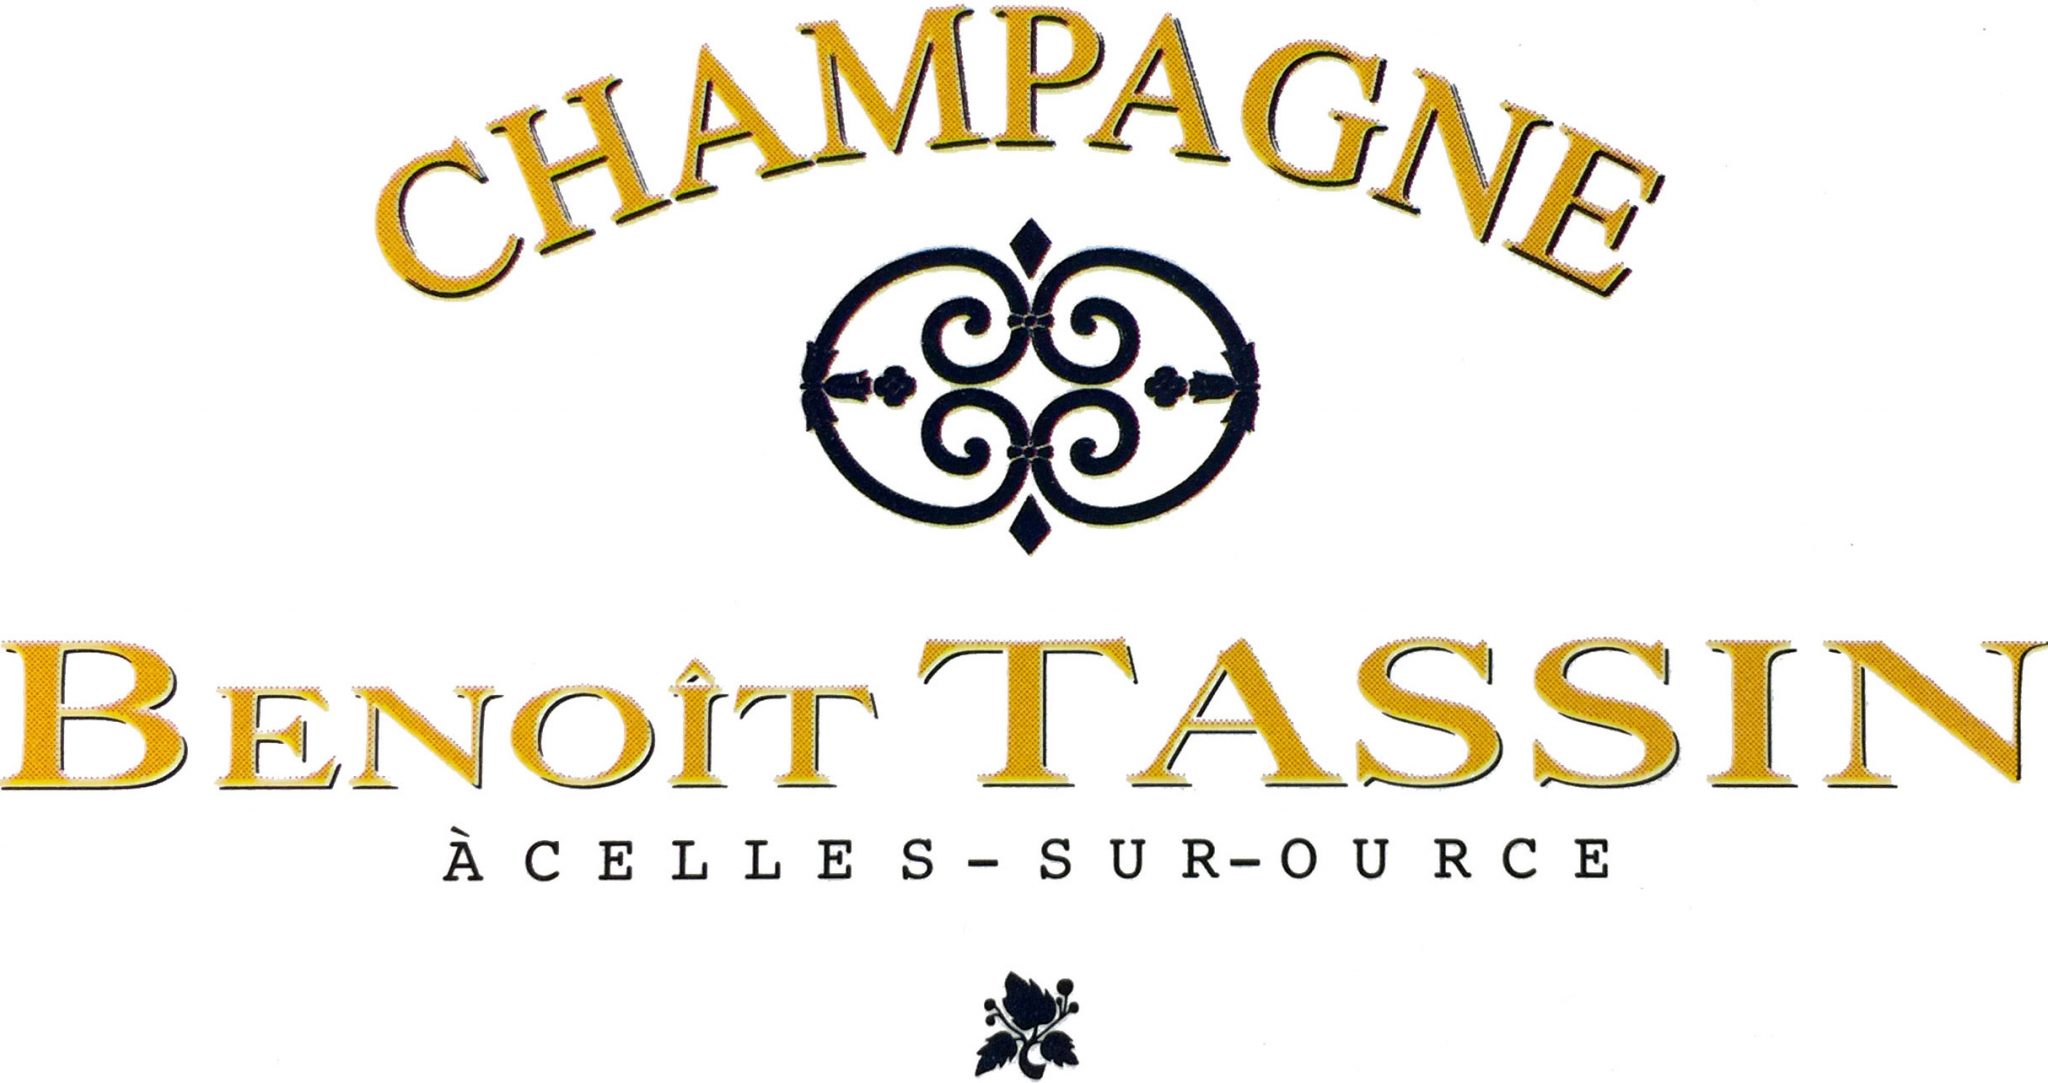 Champagne Benoît Tassin